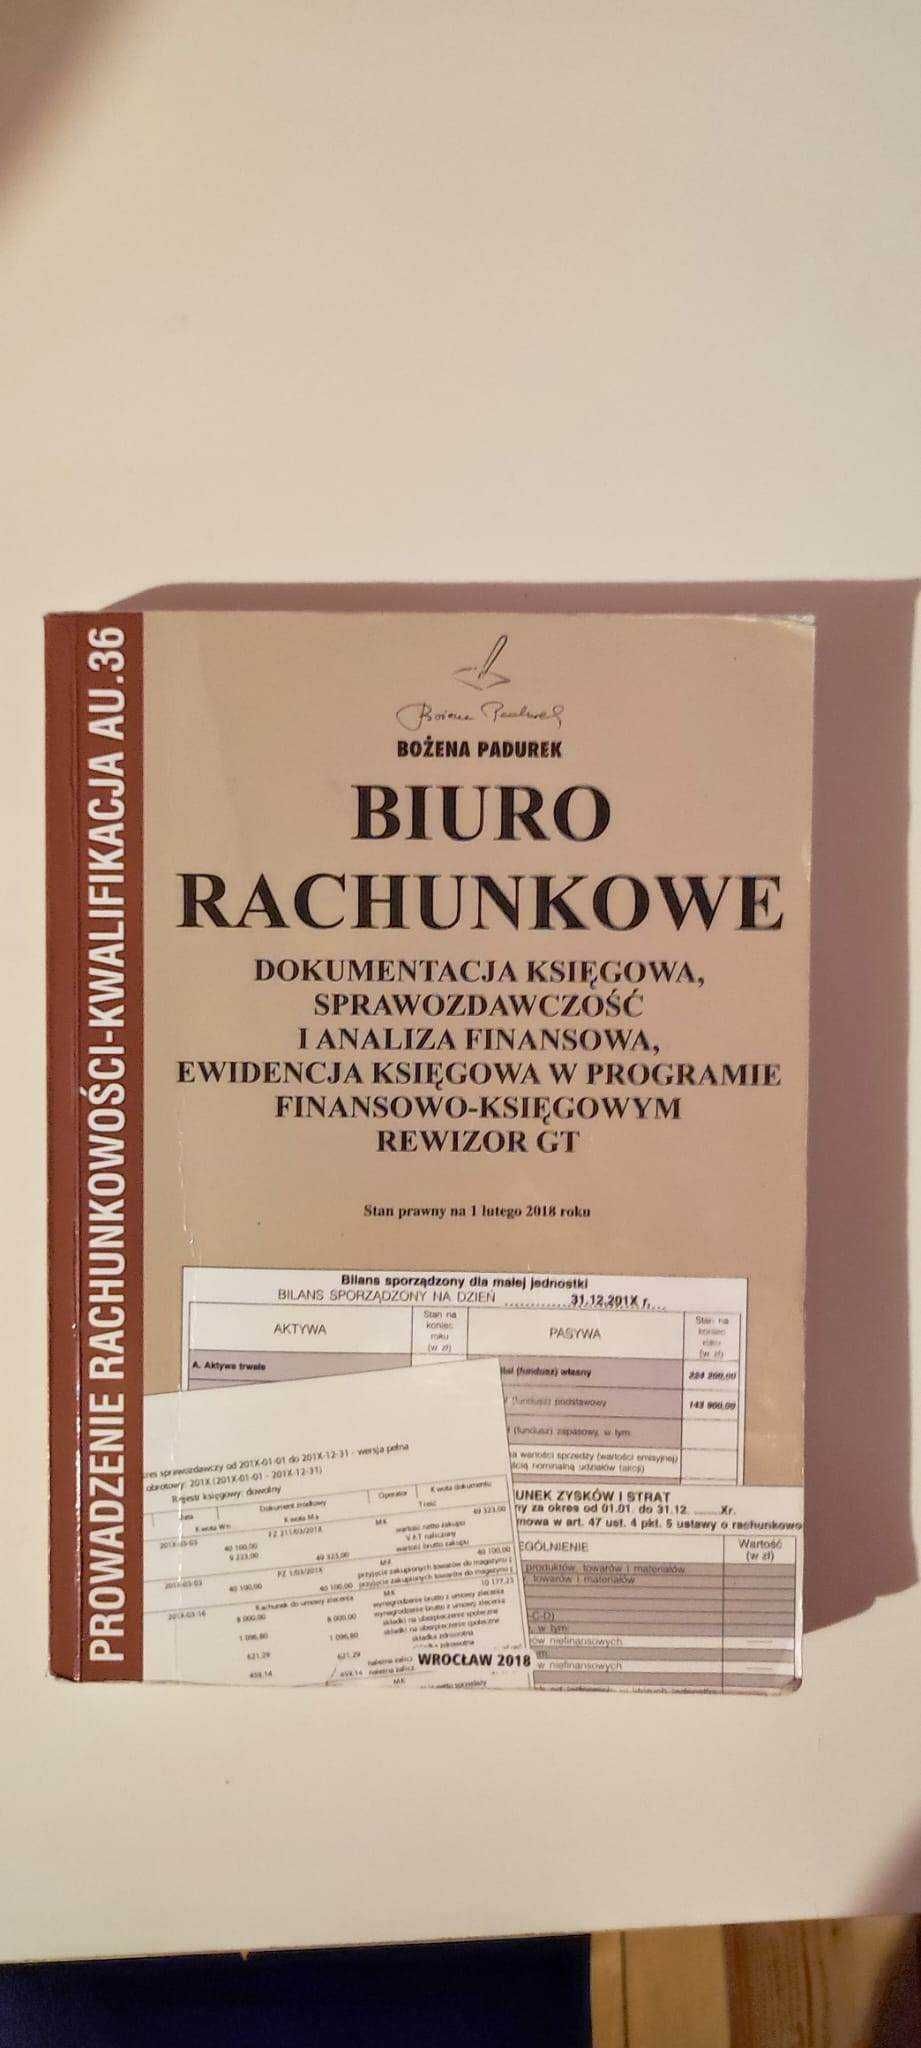 Prowadzenie rachunkowości- kwalifikacja AU.36 "BIURO RACHUNKOWE"